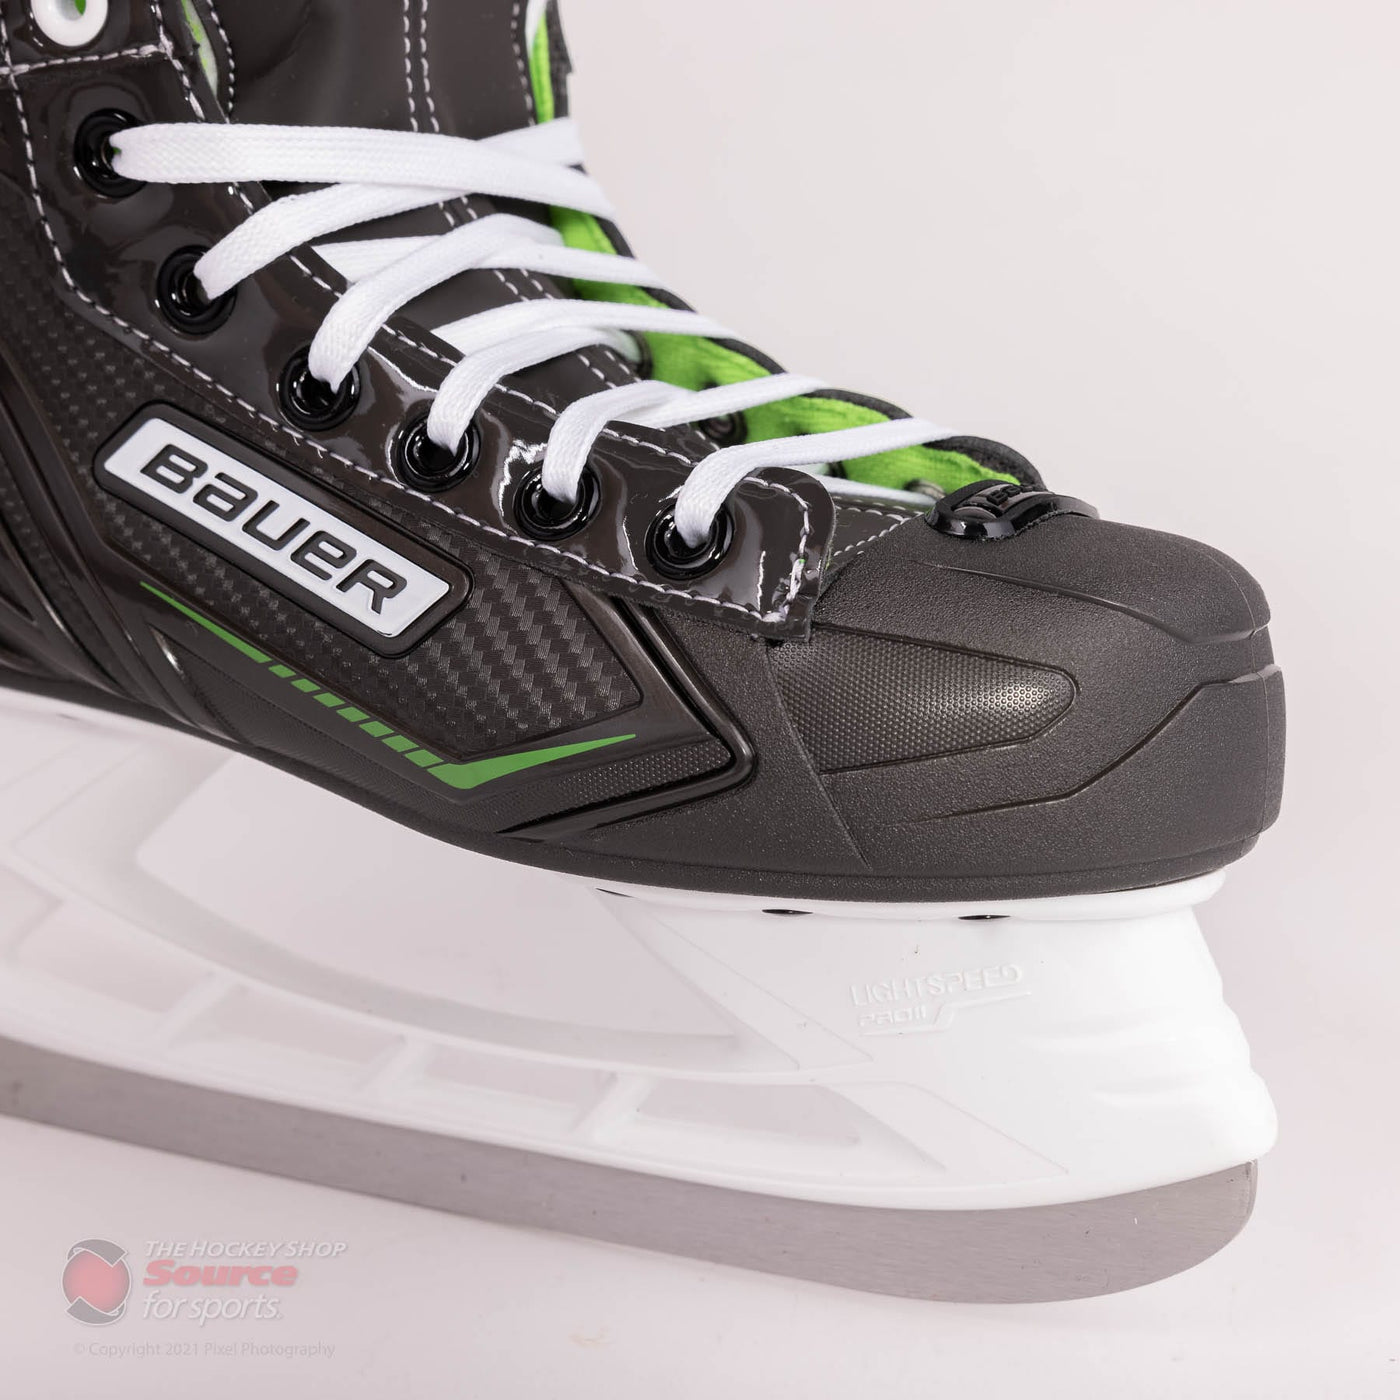 Bauer X-LS Junior Hockey Skates